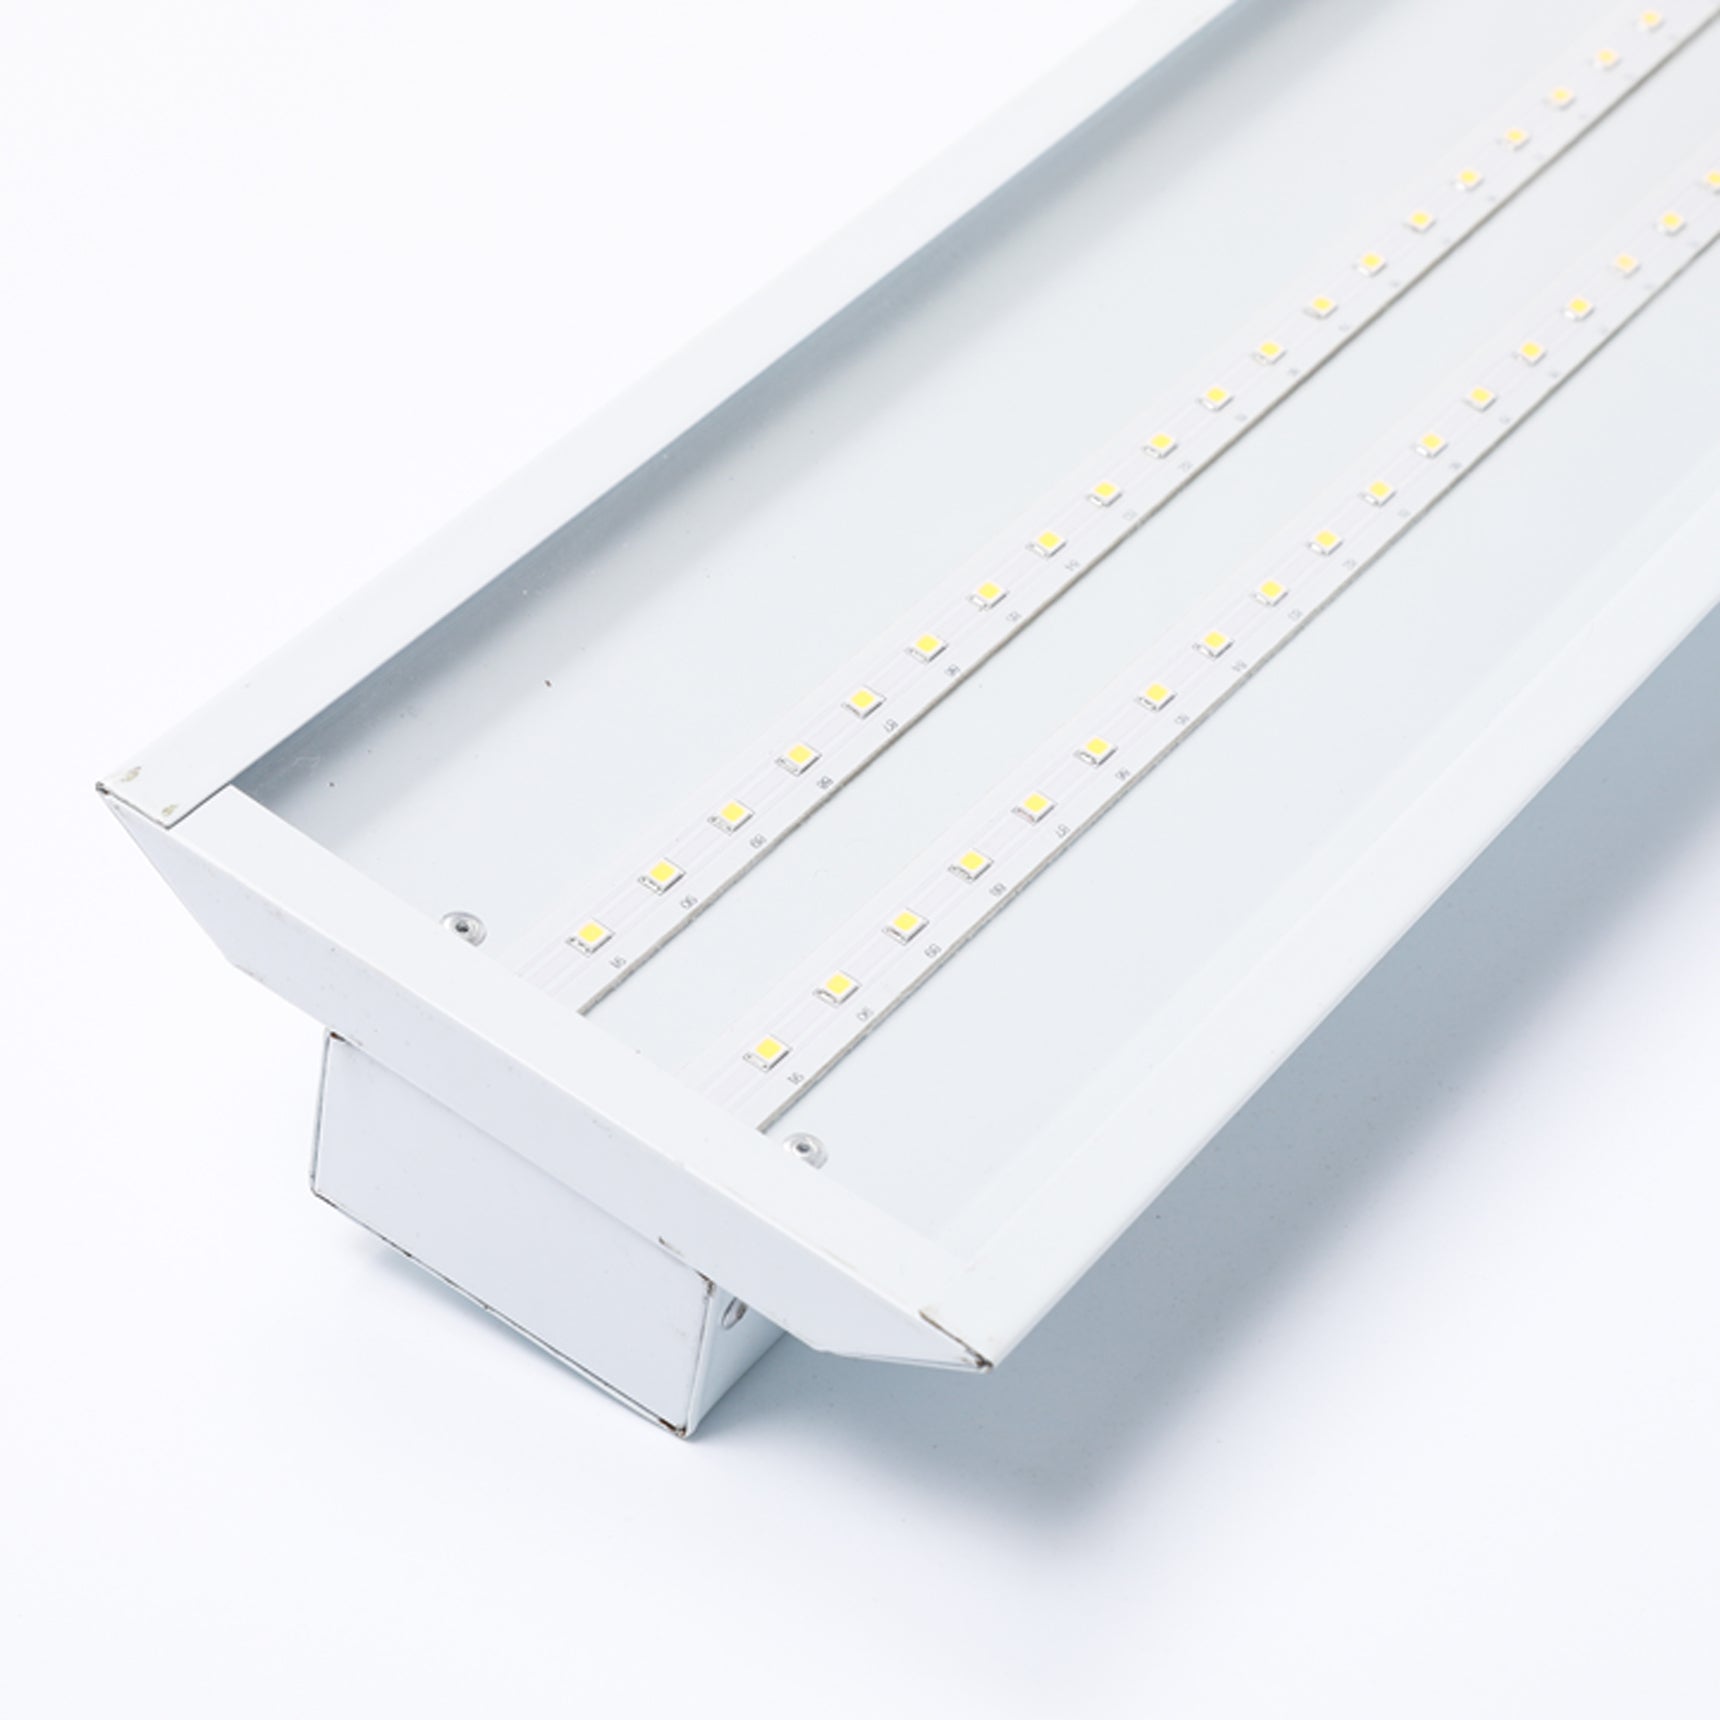 High CRI 95 LED Strip Light - 6500K Daylight White LED Strip